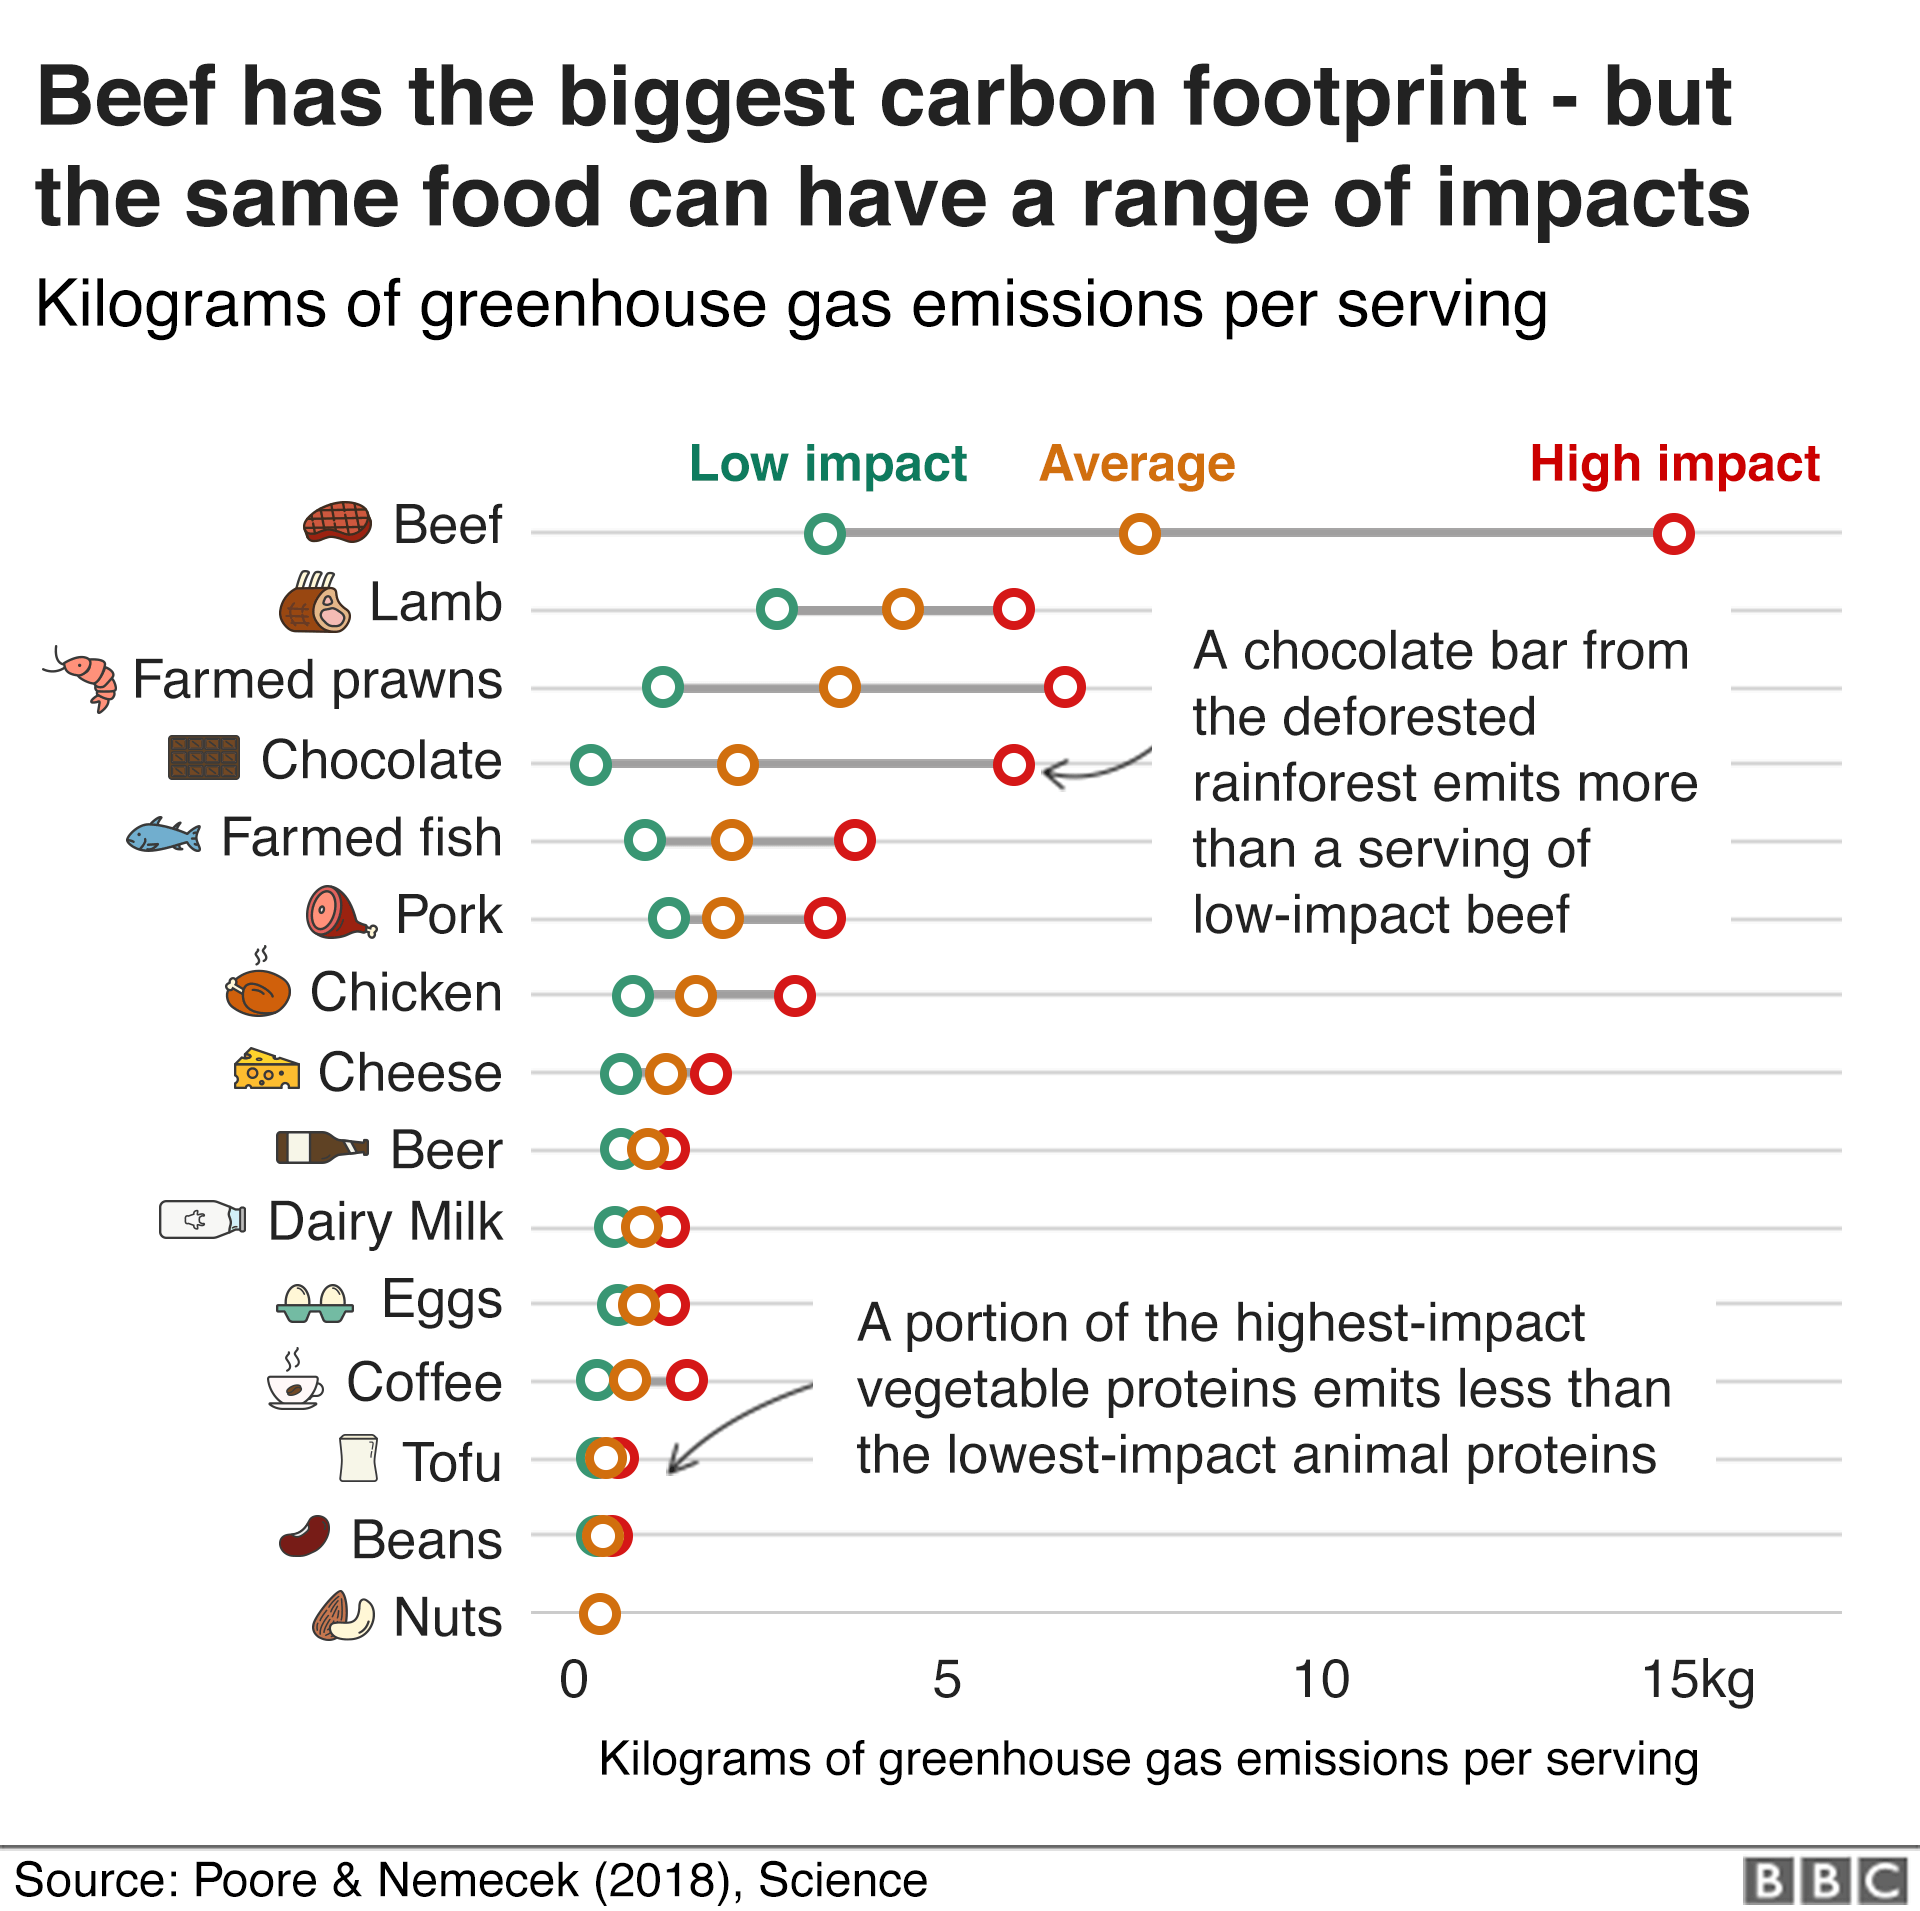 Диаграмма, показывающая воздействие различных пищевых продуктов на климат: говядина имеет самый высокий углеродный след, но одно и то же блюдо может оказывать очень различное воздействие